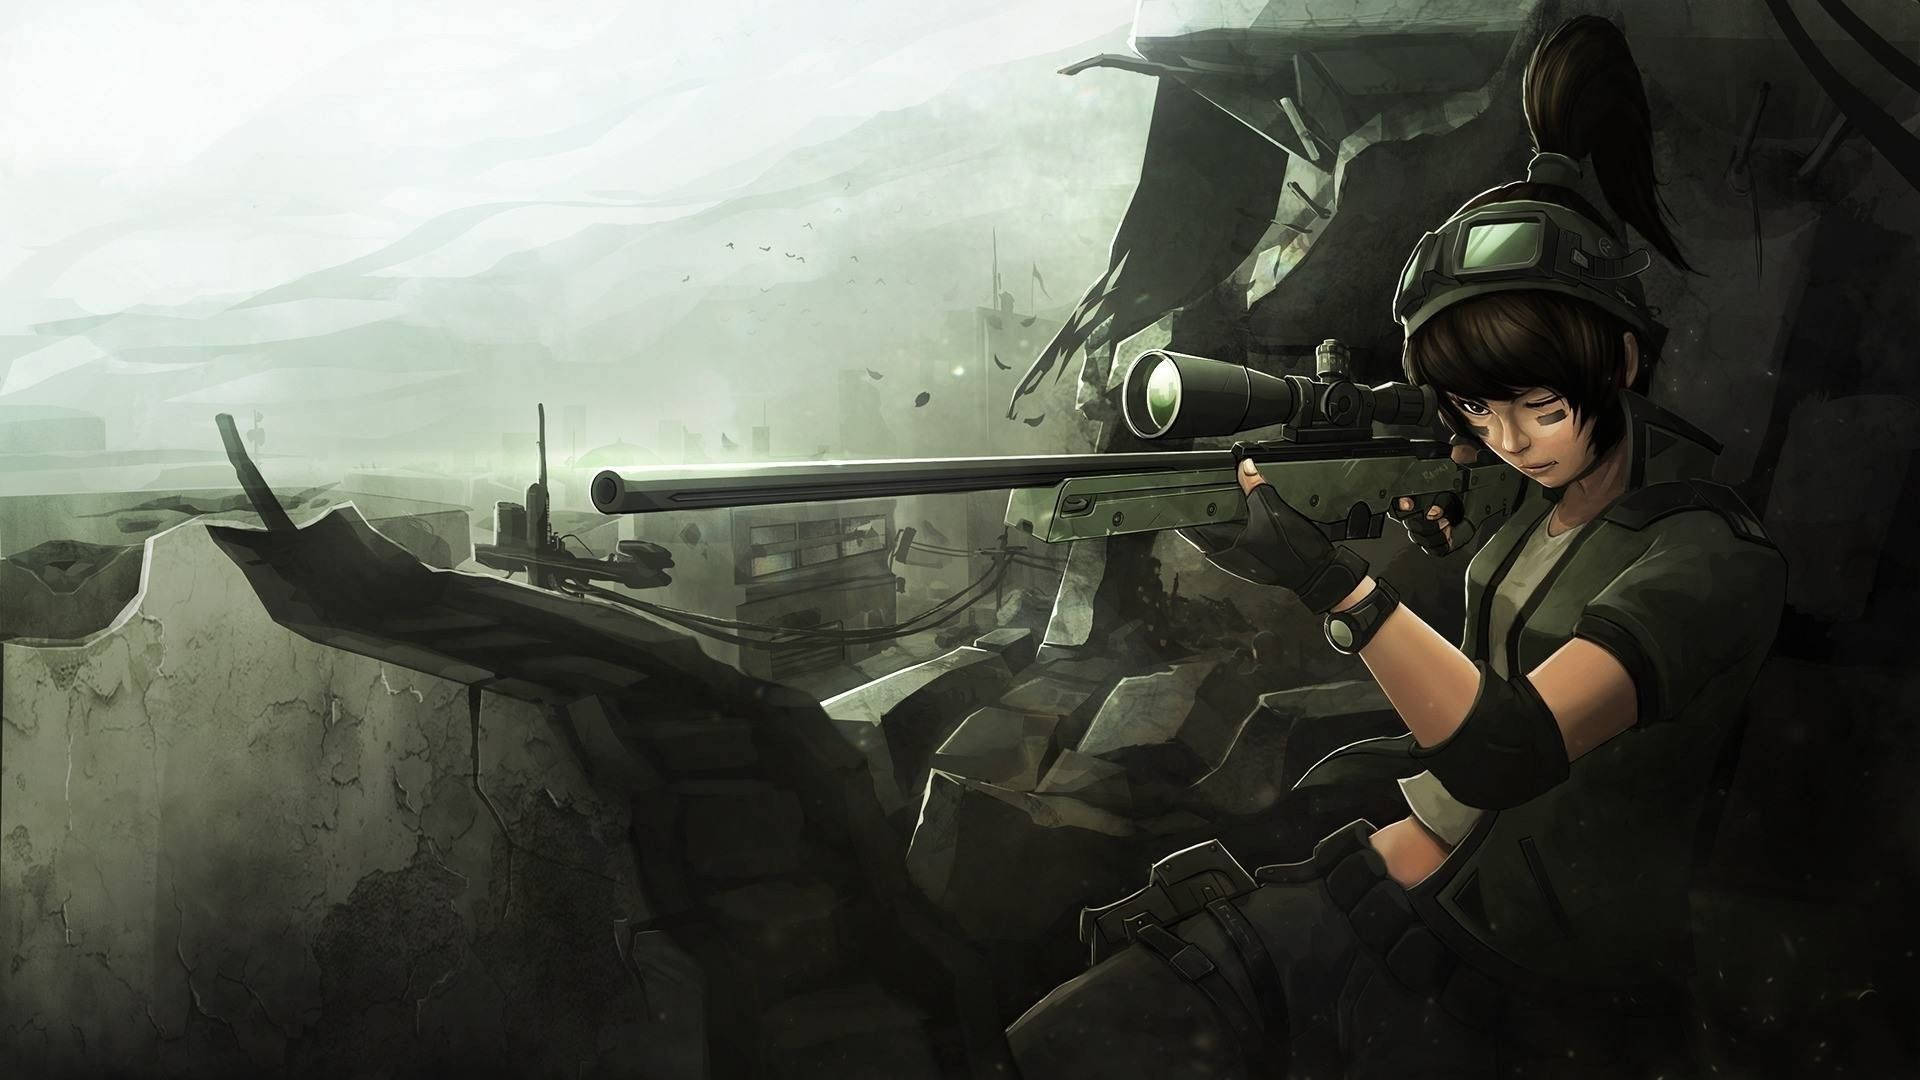 Anime Sniper Girl Background